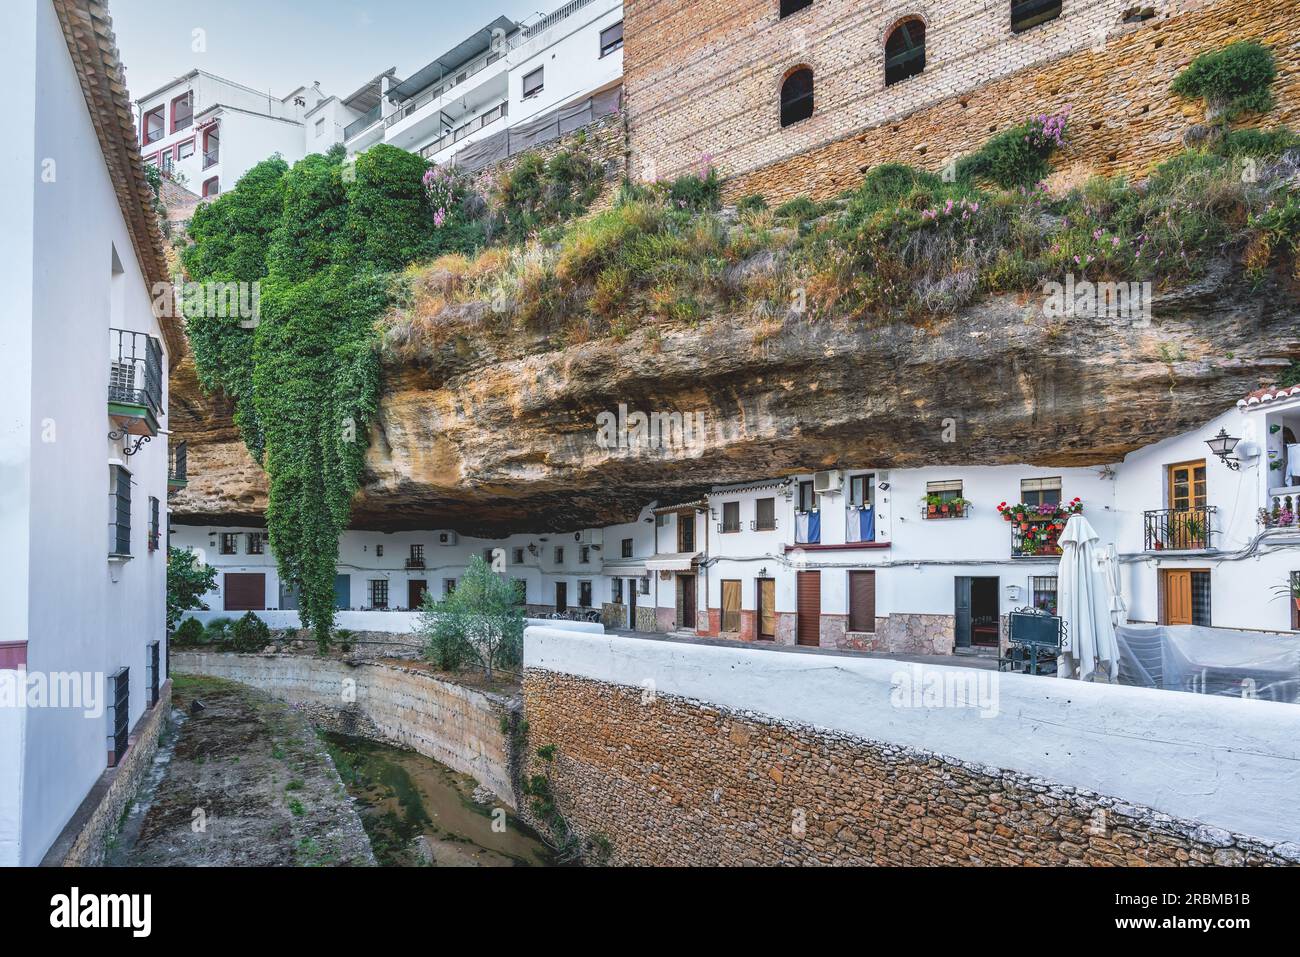 Calle Cuevas del sol rue avec rochers habitations et restaurants - Setenil de las Bodegas, Andalousie, Espagne Banque D'Images